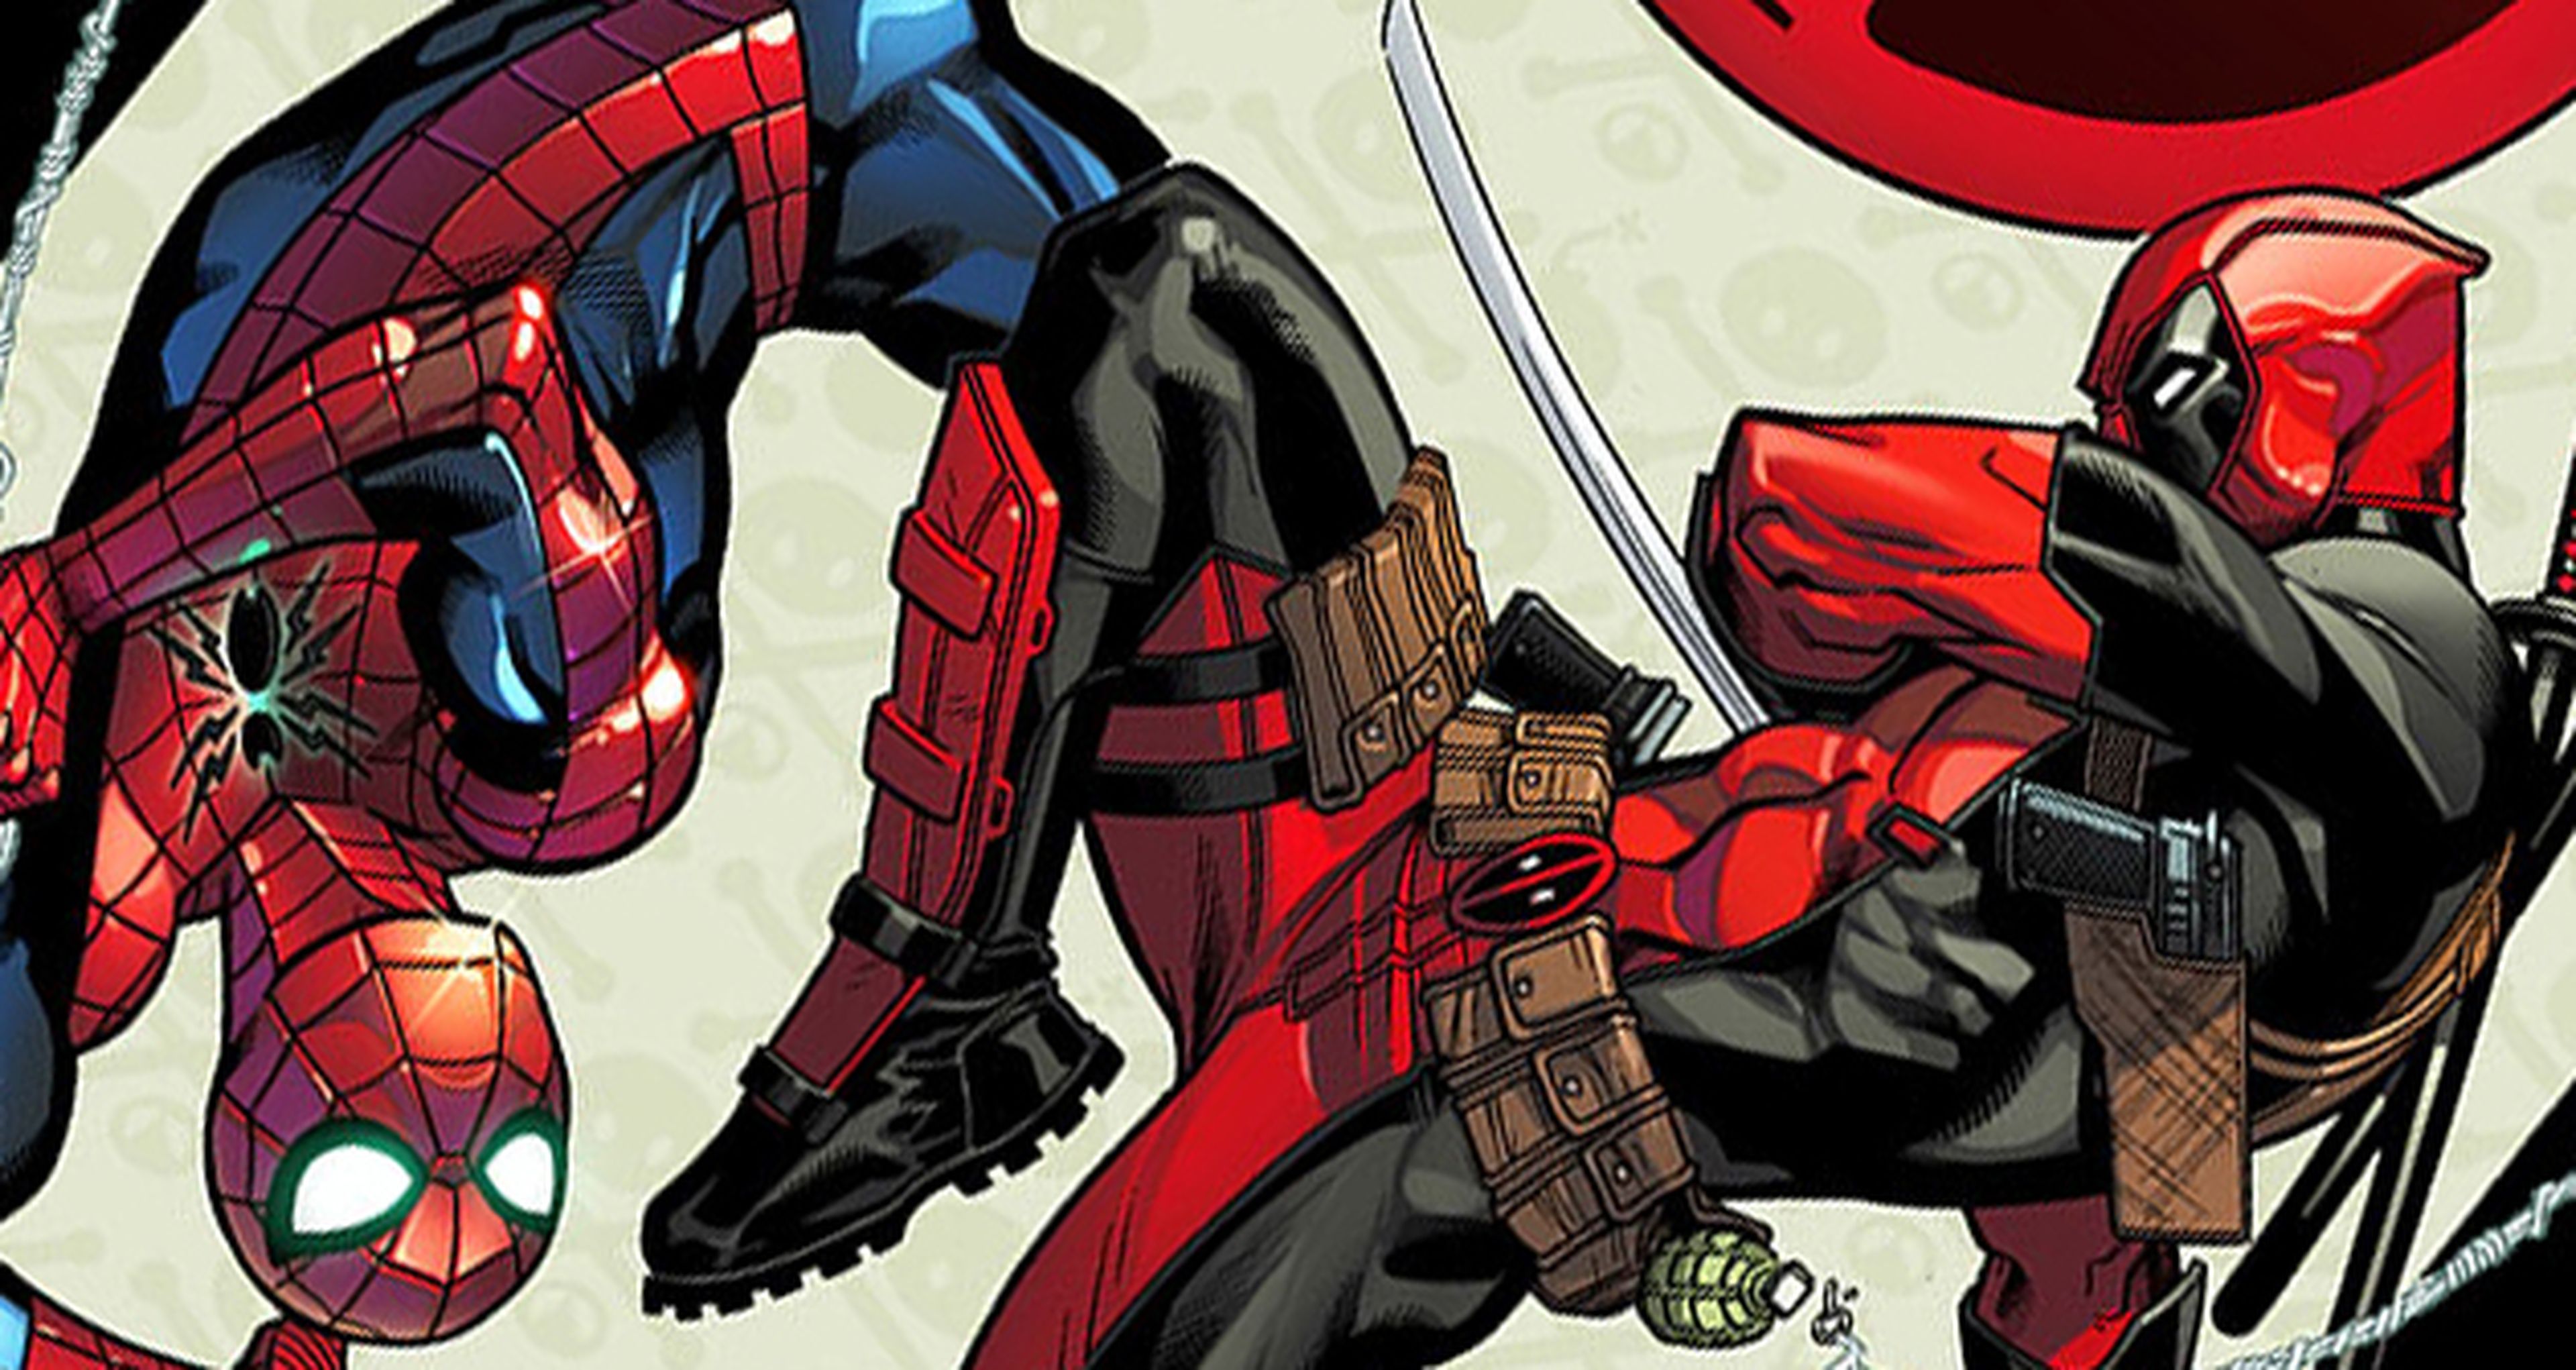 Spider-man y Masacre (Deadpool) tendrán serie conjunta de cómic